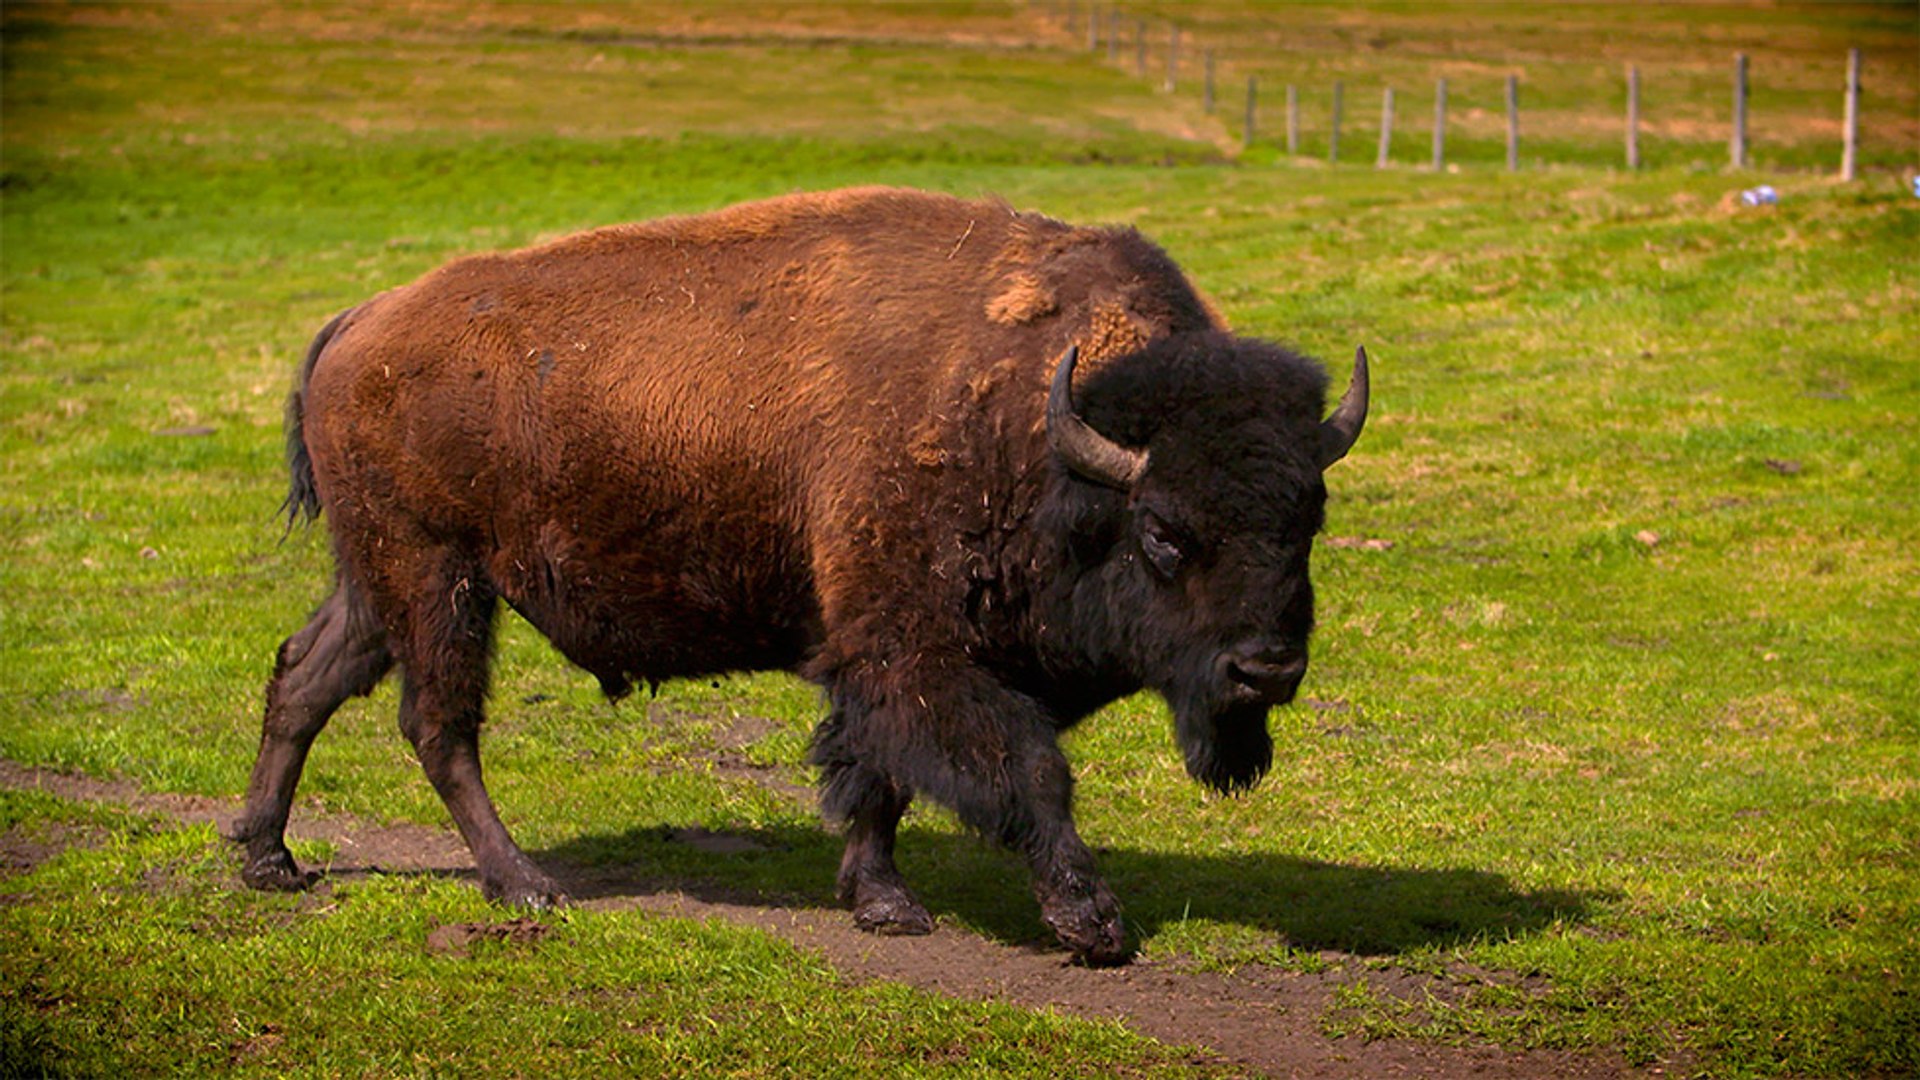 30 - Bentley bison, 100% natural meat